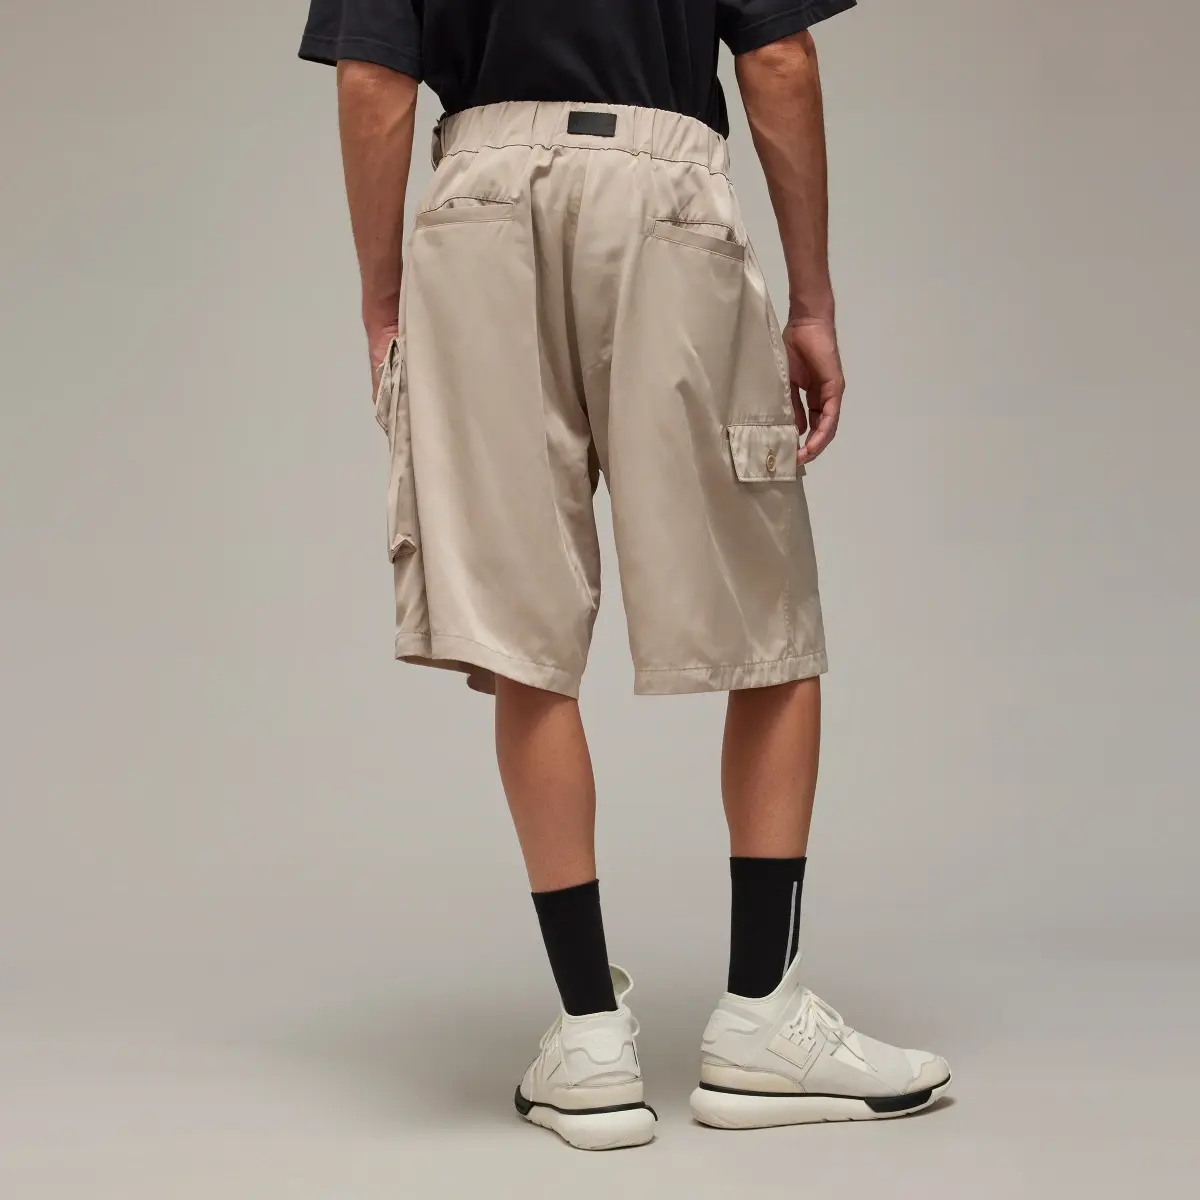 Adidas Y-3 Nylon Twill Shorts. 3